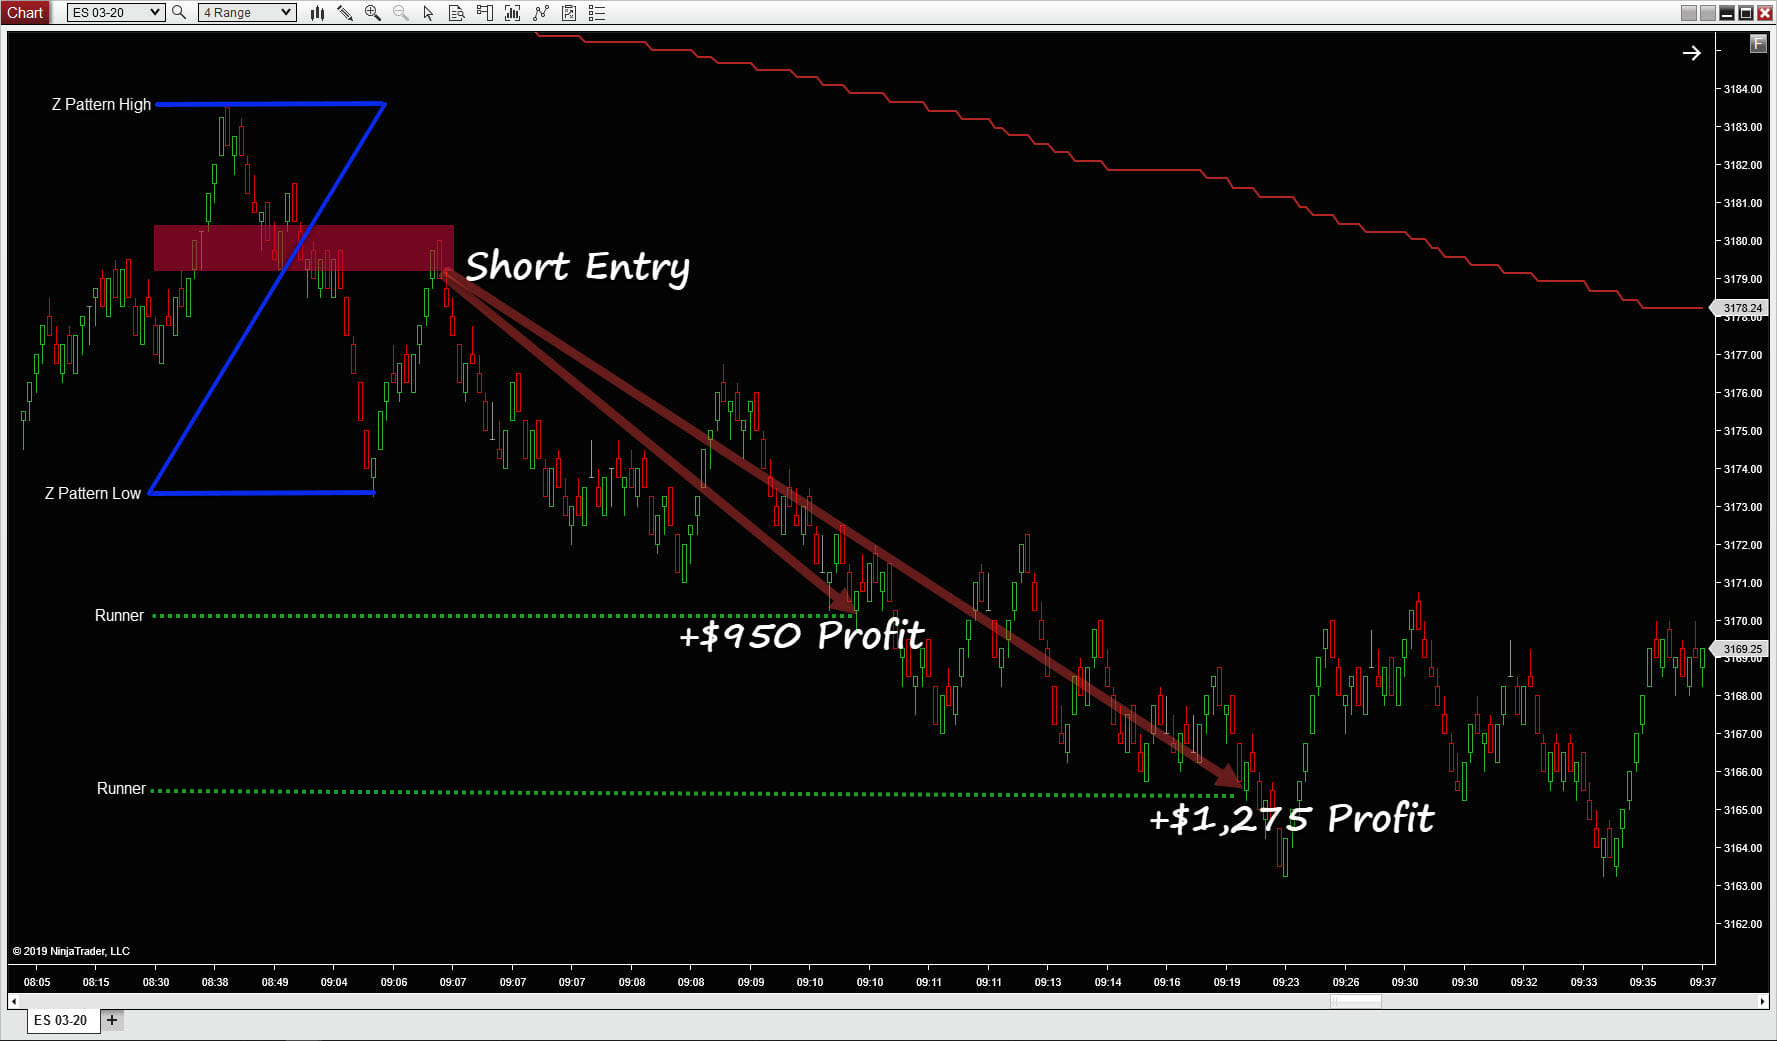 Z-pattern trading short entry 4 range showing delivering profits in total over $2,000.